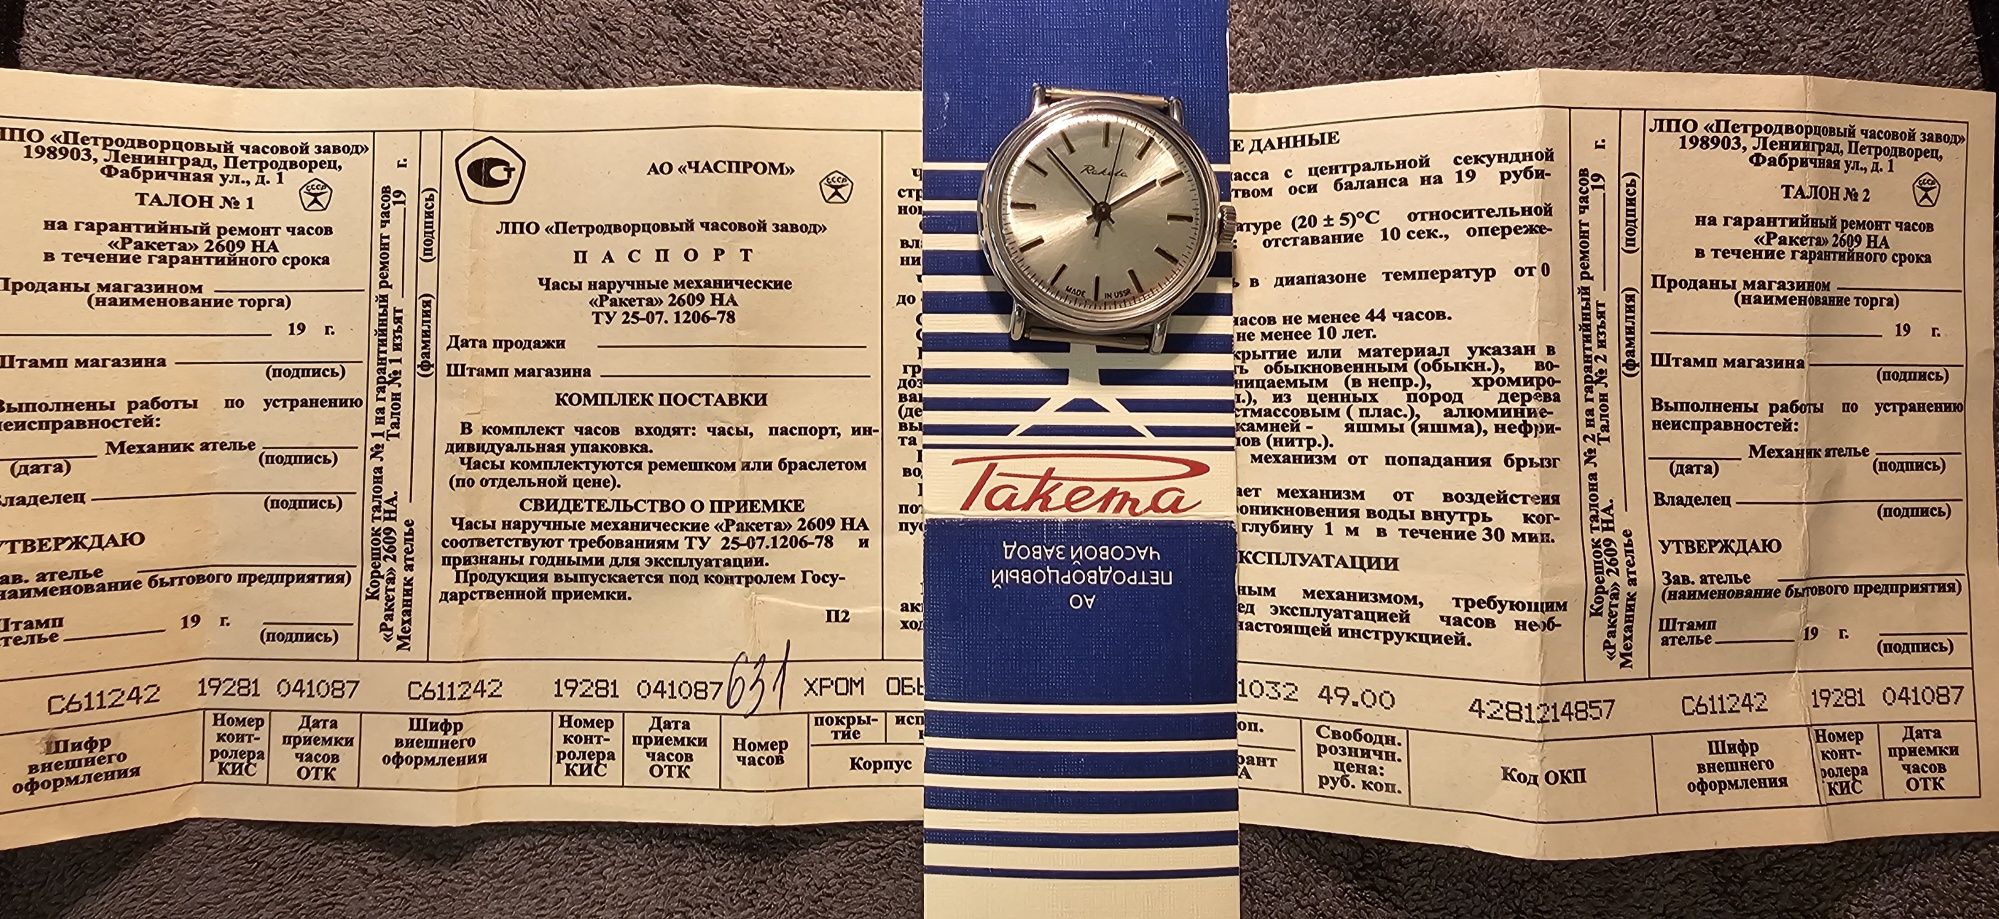 Часы Ракета 2609 на СССР